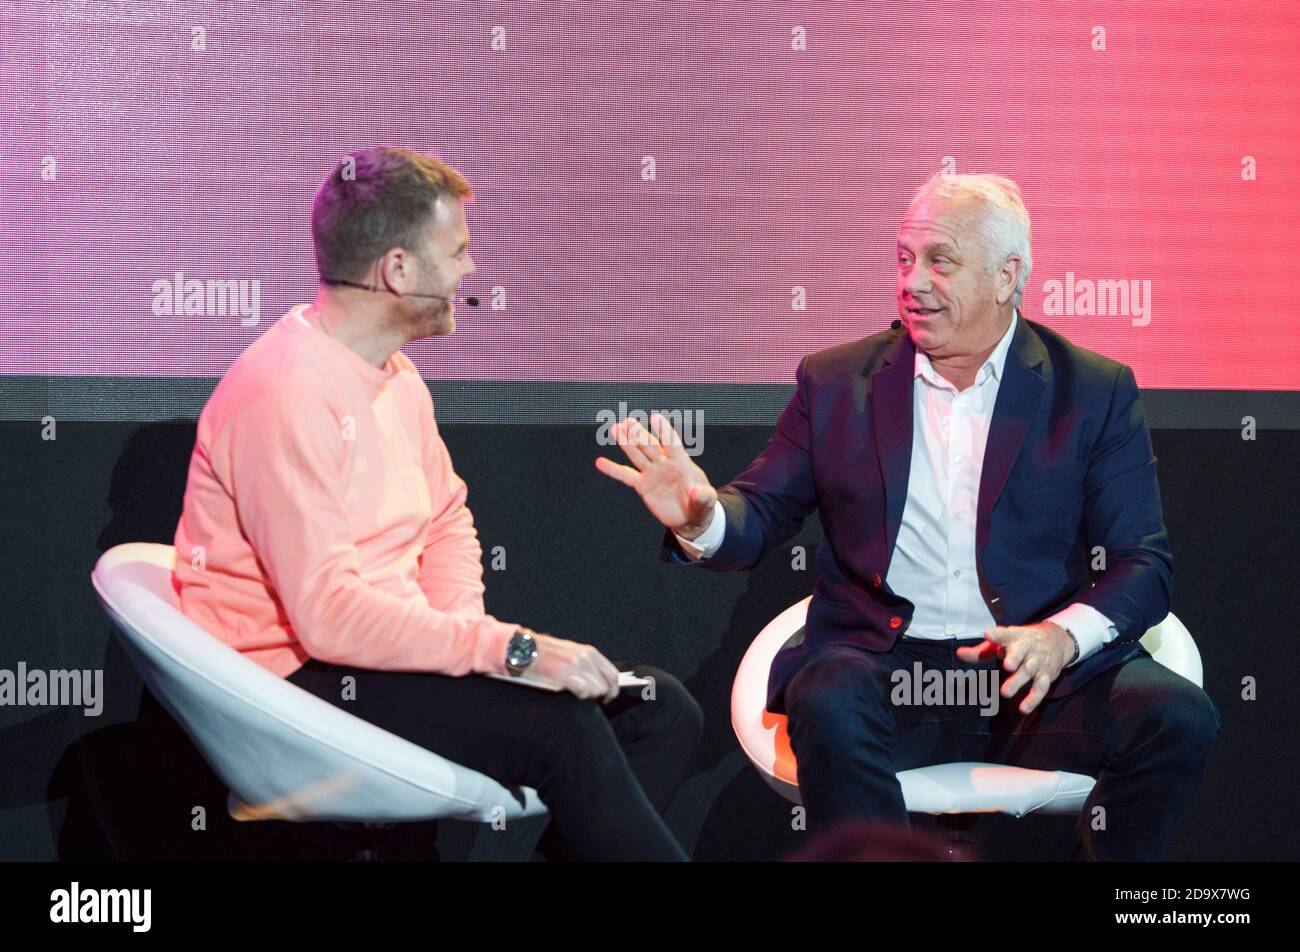 Greg Lemond wird von Matt Barbet auf dem 2019 Rouleur Live Event in London interviewt Stockfoto